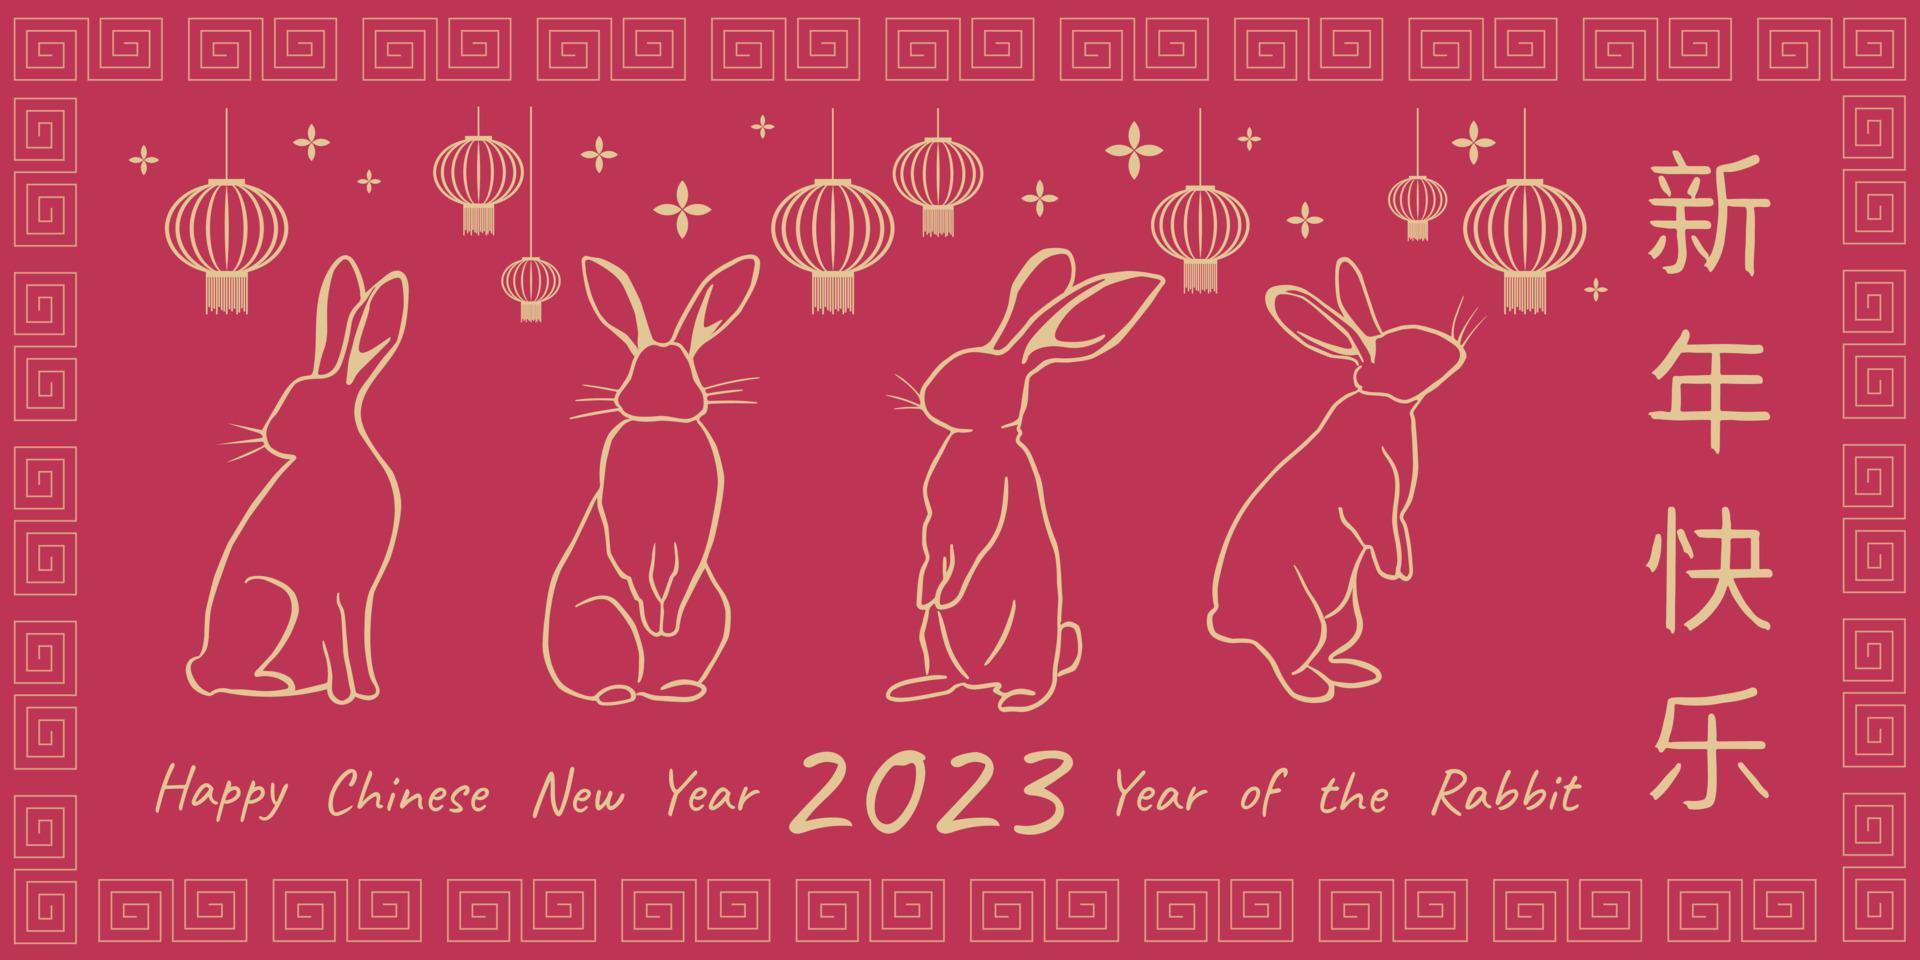 año nuevo chino 2023 año del conejo. tarjeta de felicitación con símbolo del zodiaco tradicional - conejos. describe conejos dorados con linternas chinas en el fondo viva magenta con saludos chinos. vector